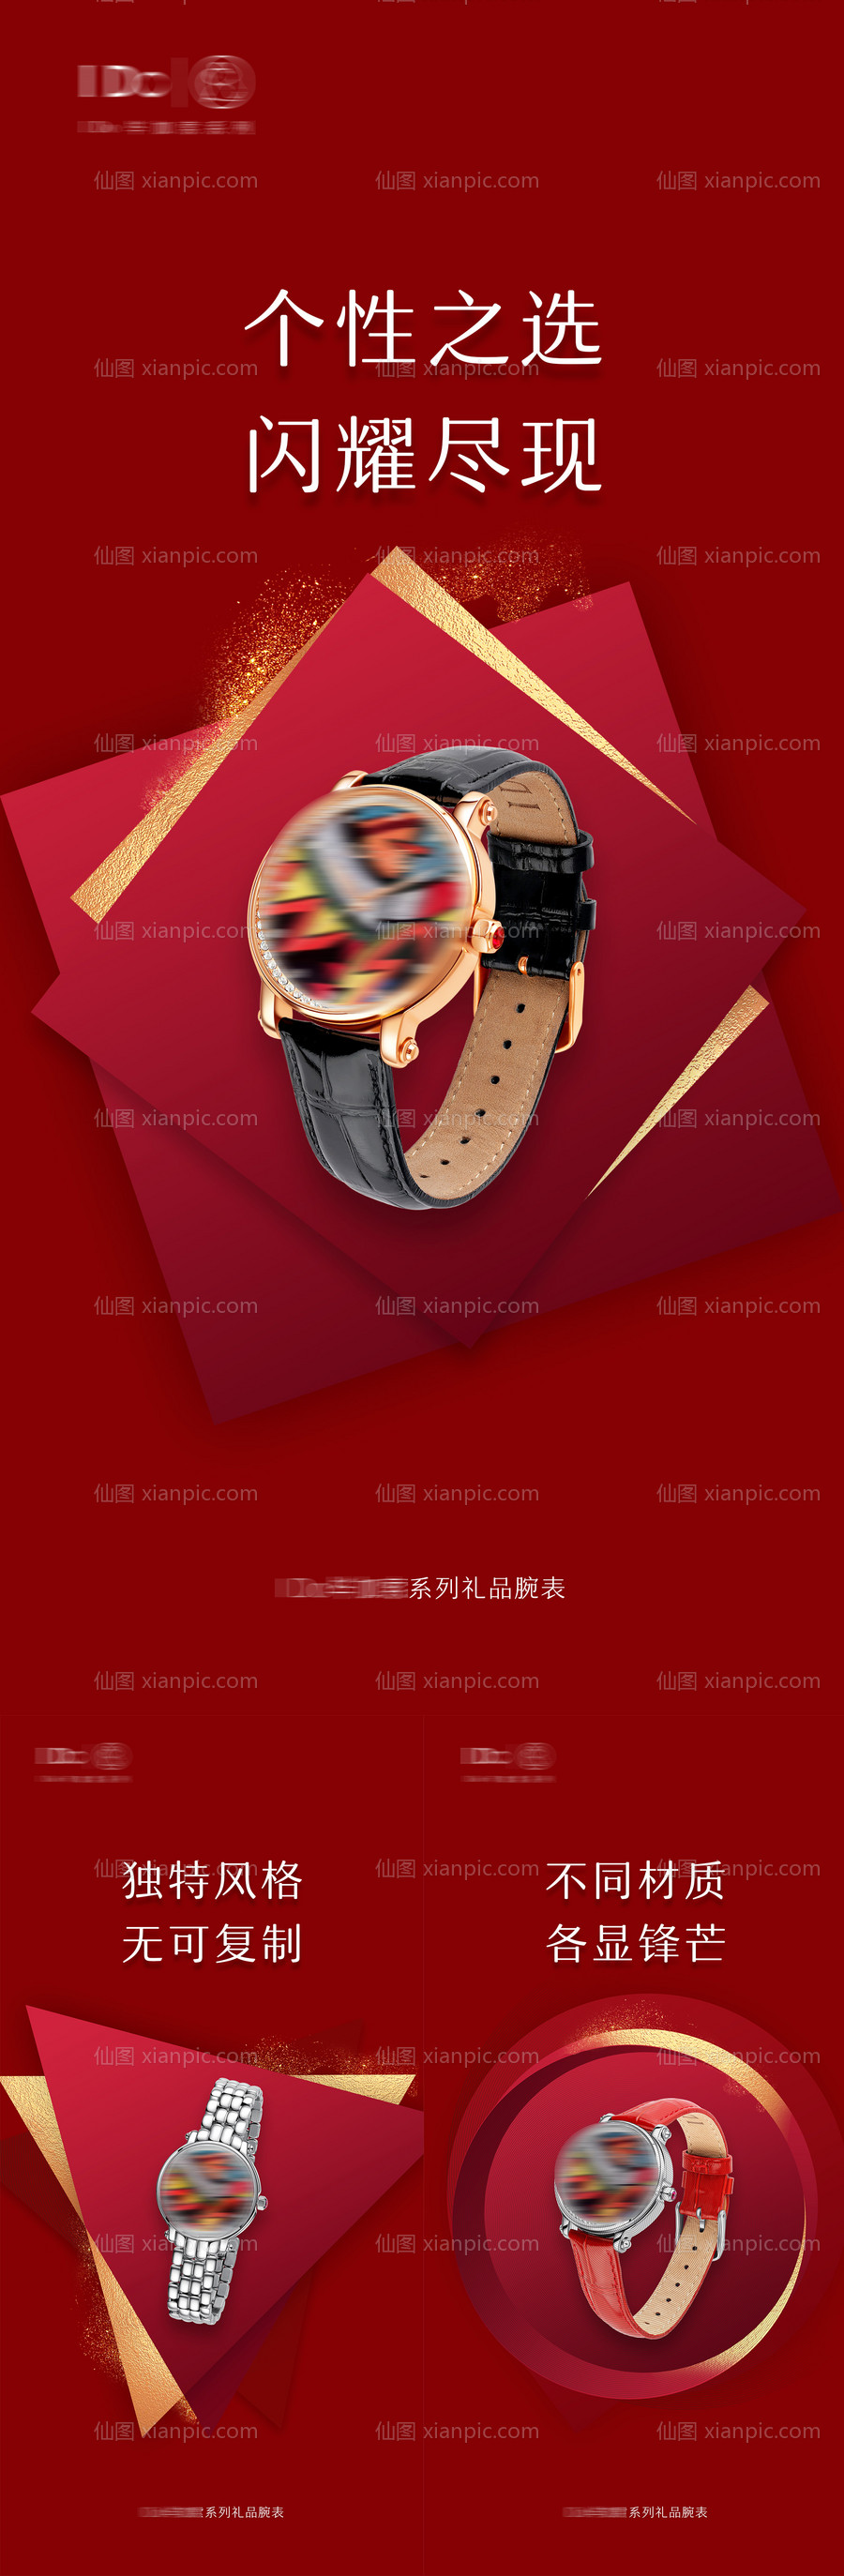 素材乐-高档品牌腕表手表宣传海报